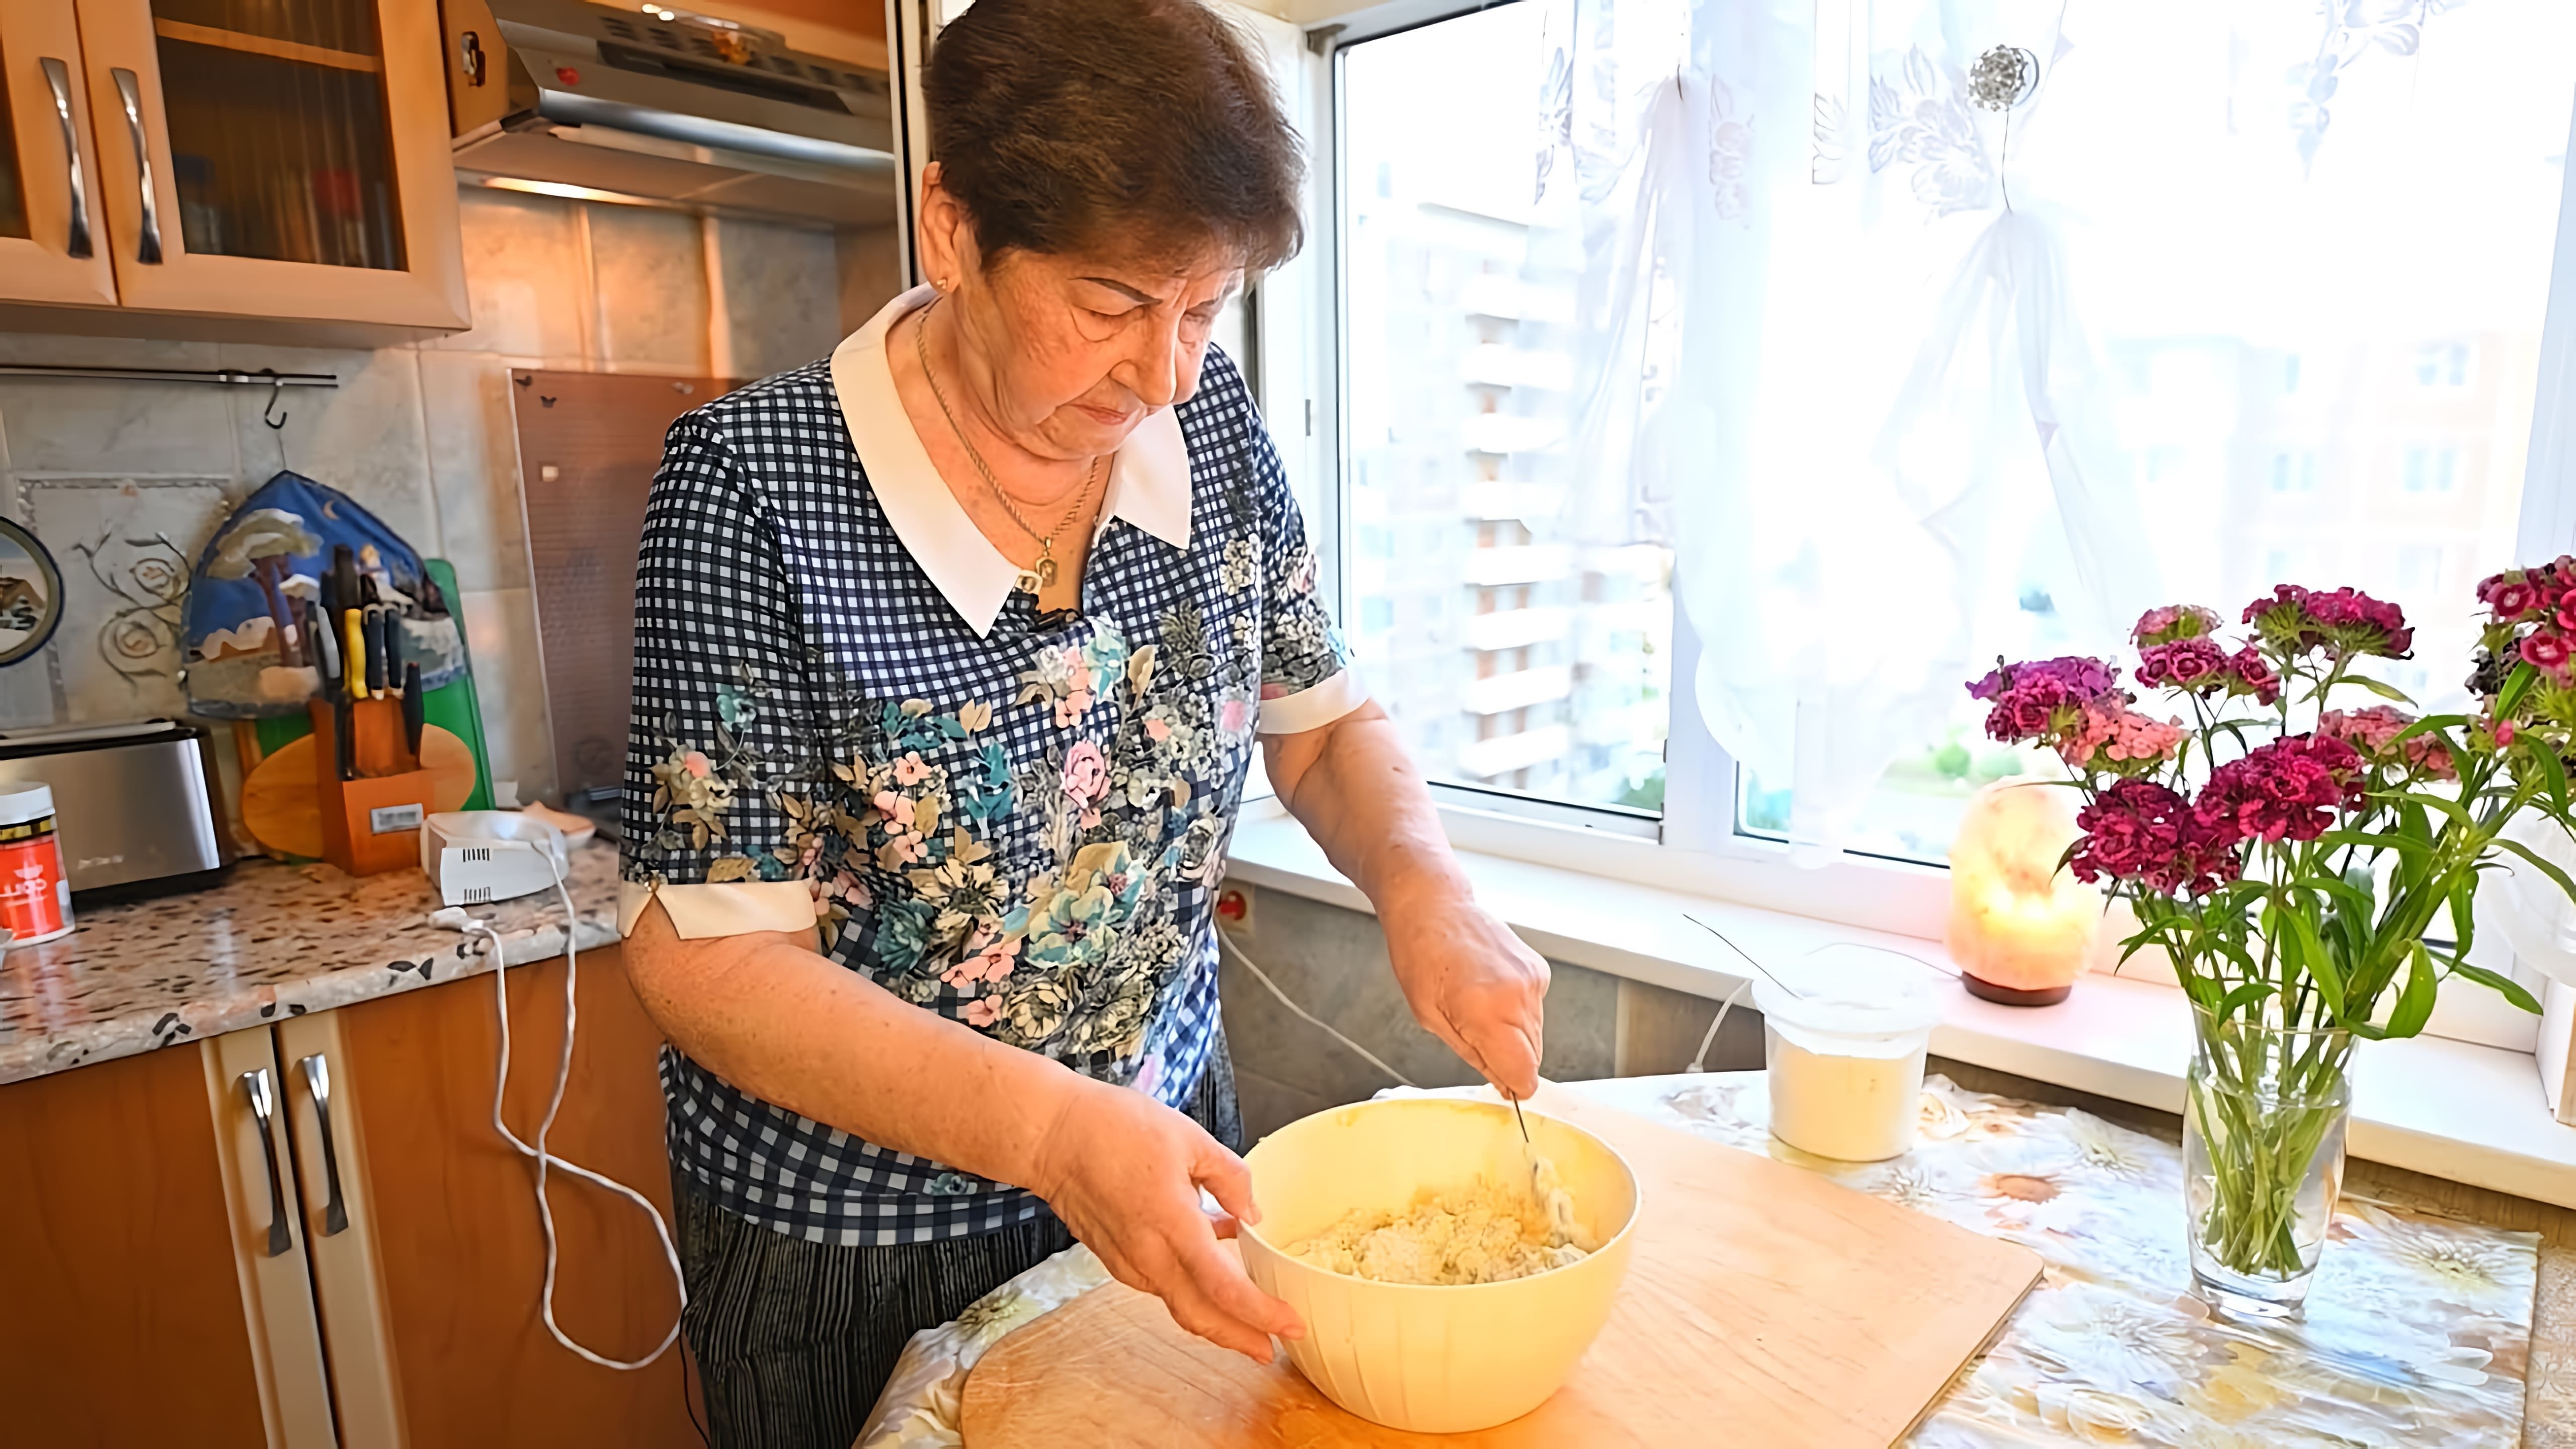 В этом видео демонстрируется рецепт приготовления печенья "Поцелуйчики"